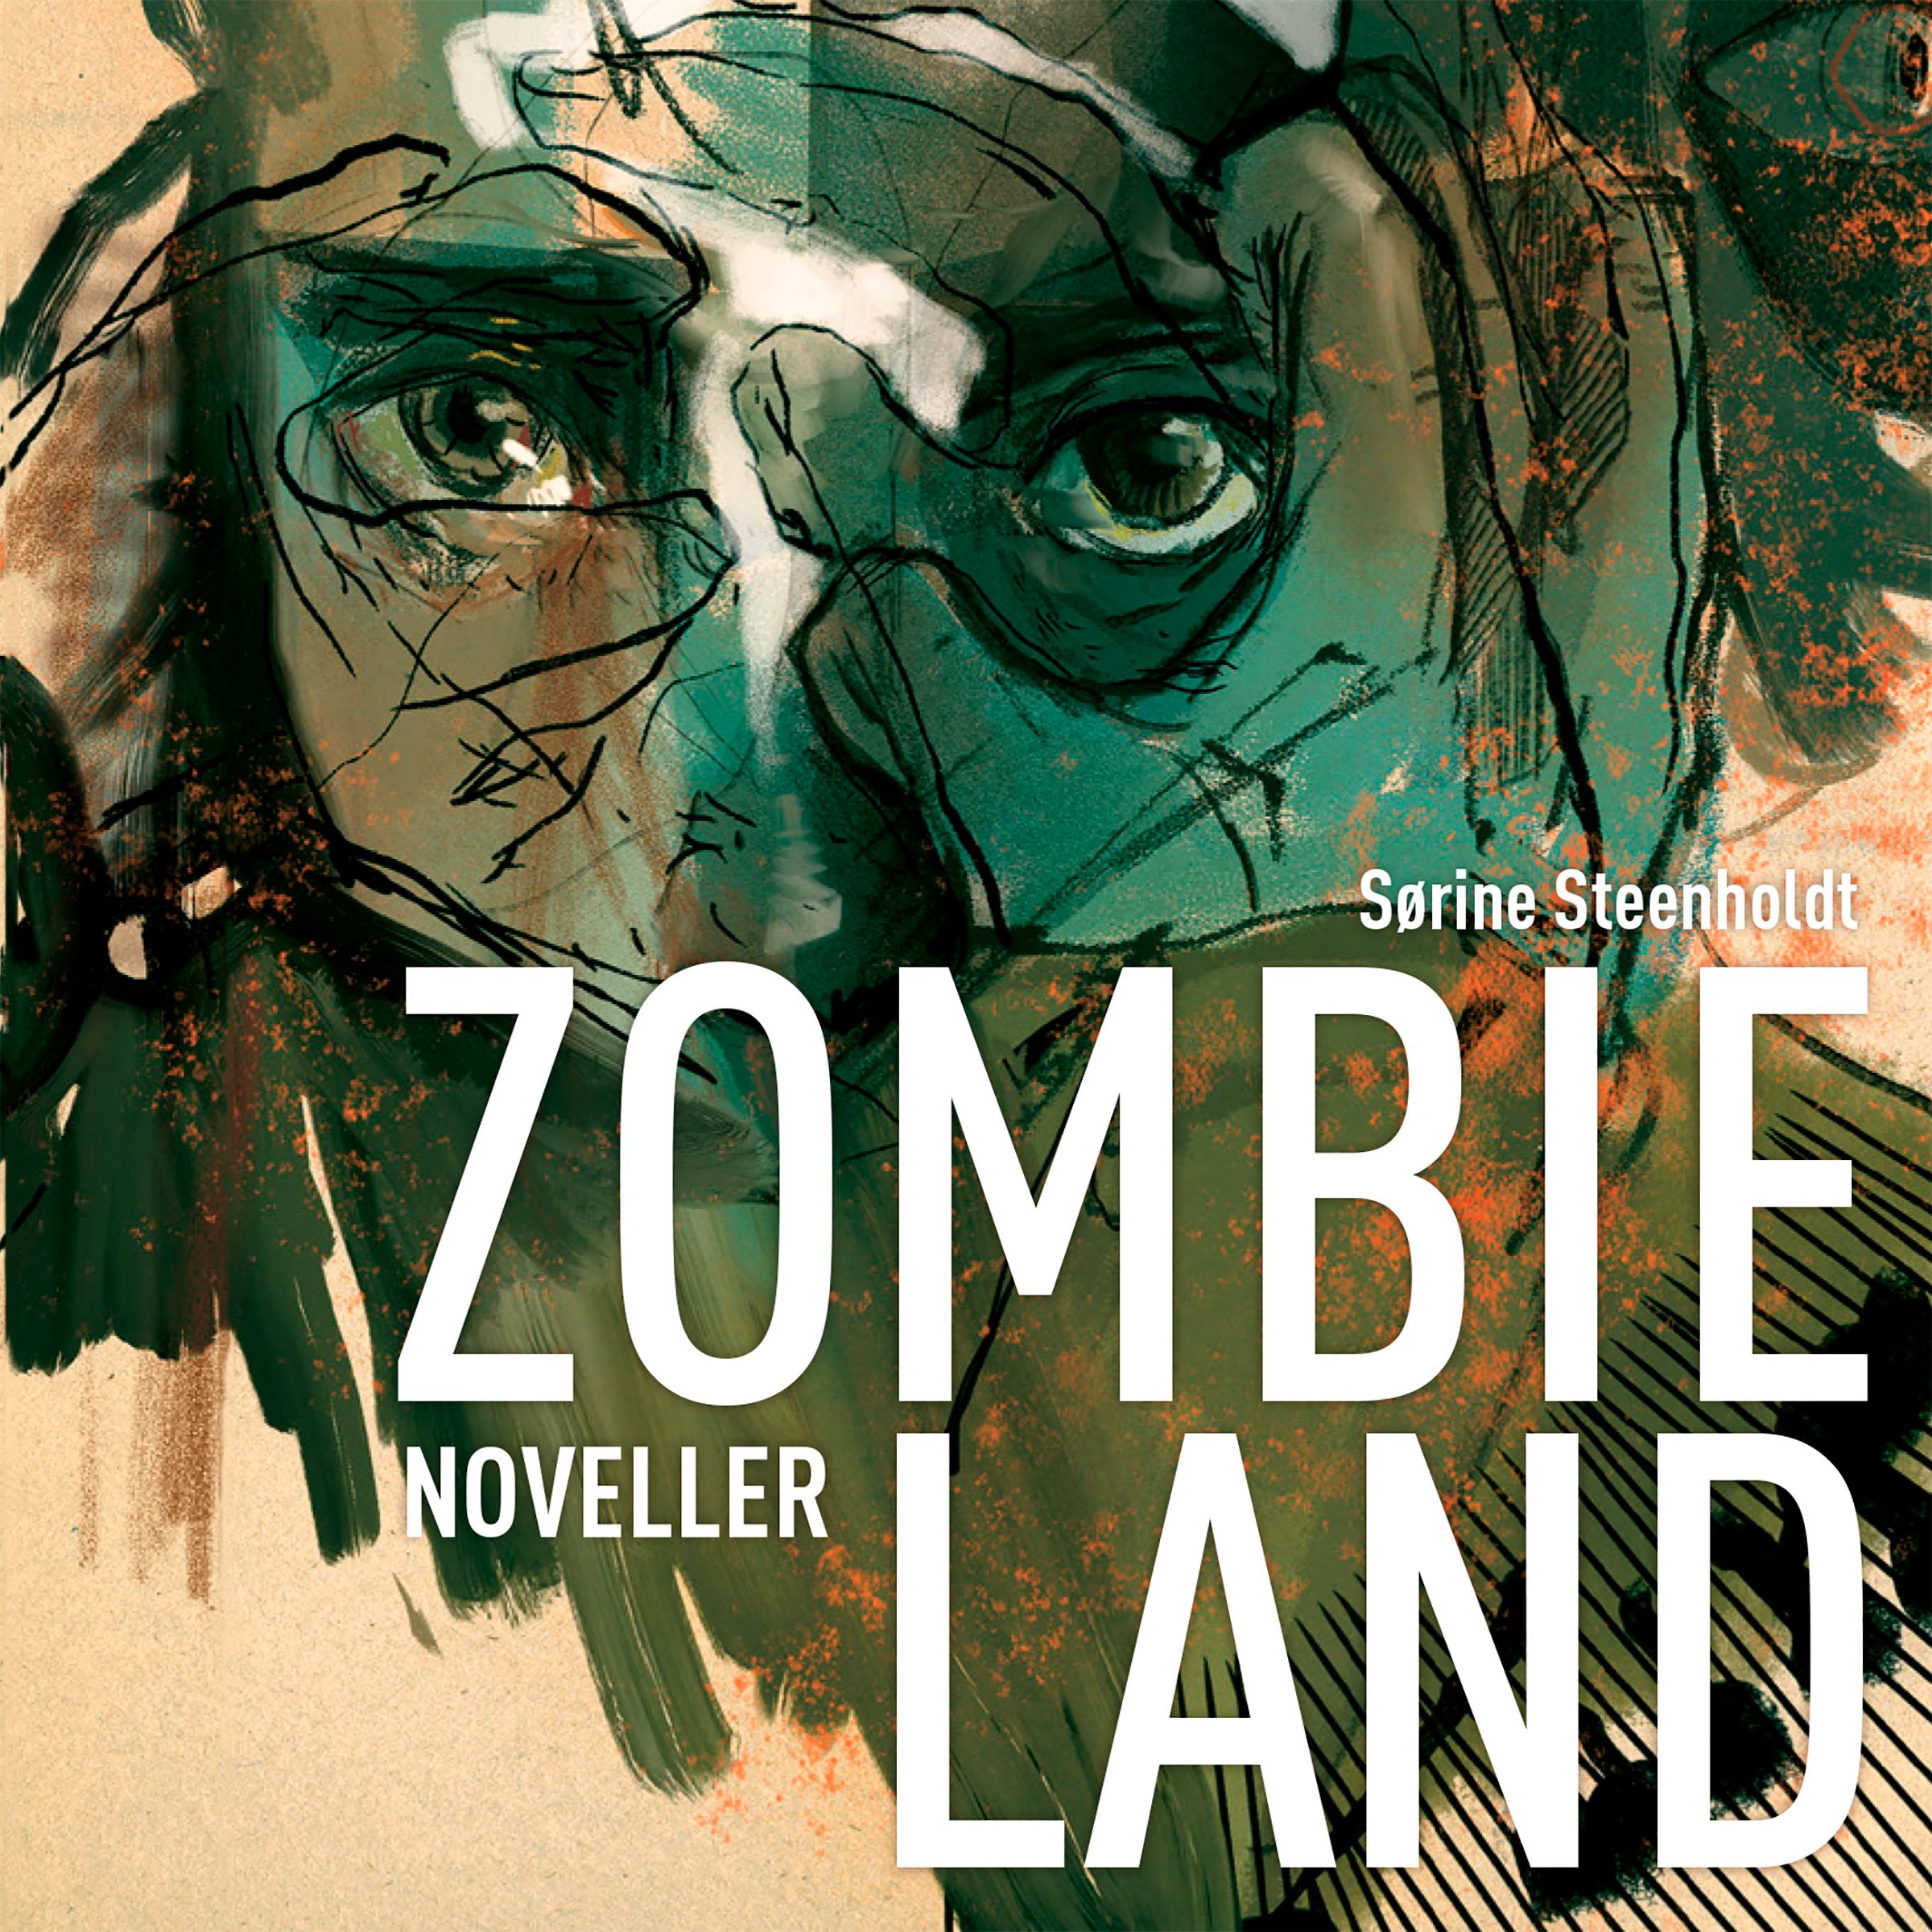 Zombieland, ljudbok av Sørine Steenholdt